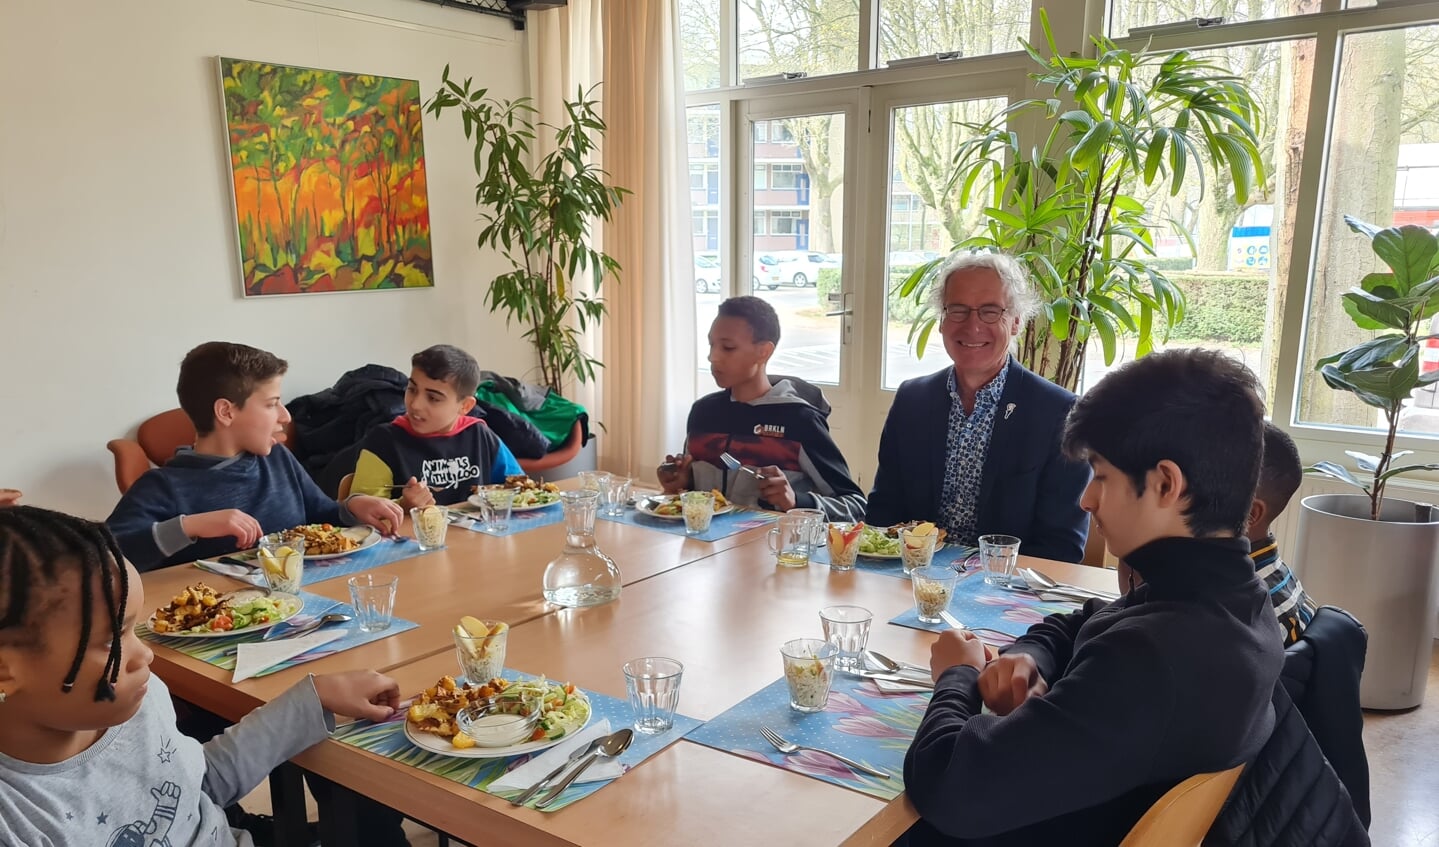 Wethouder Bosland eet samen met de leerlingen een gezonde vegetarische kapsalon.